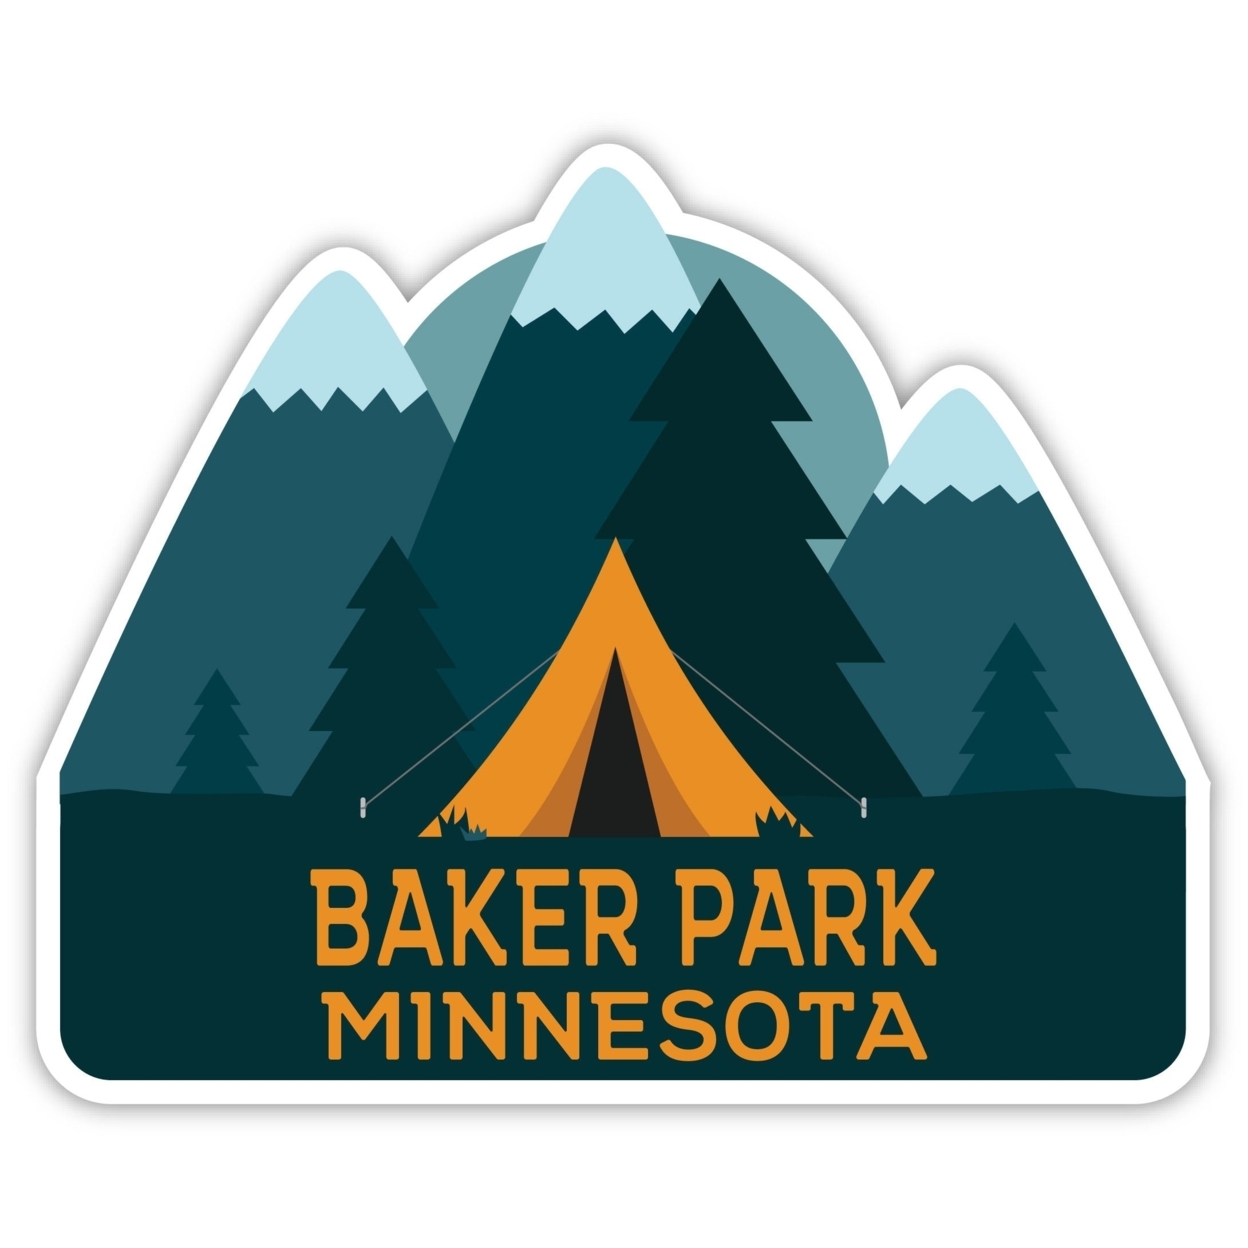 Baker Park Minnesota Souvenir Decorative Stickers (Choose Theme And Size) - Single Unit, 8-Inch, Tent